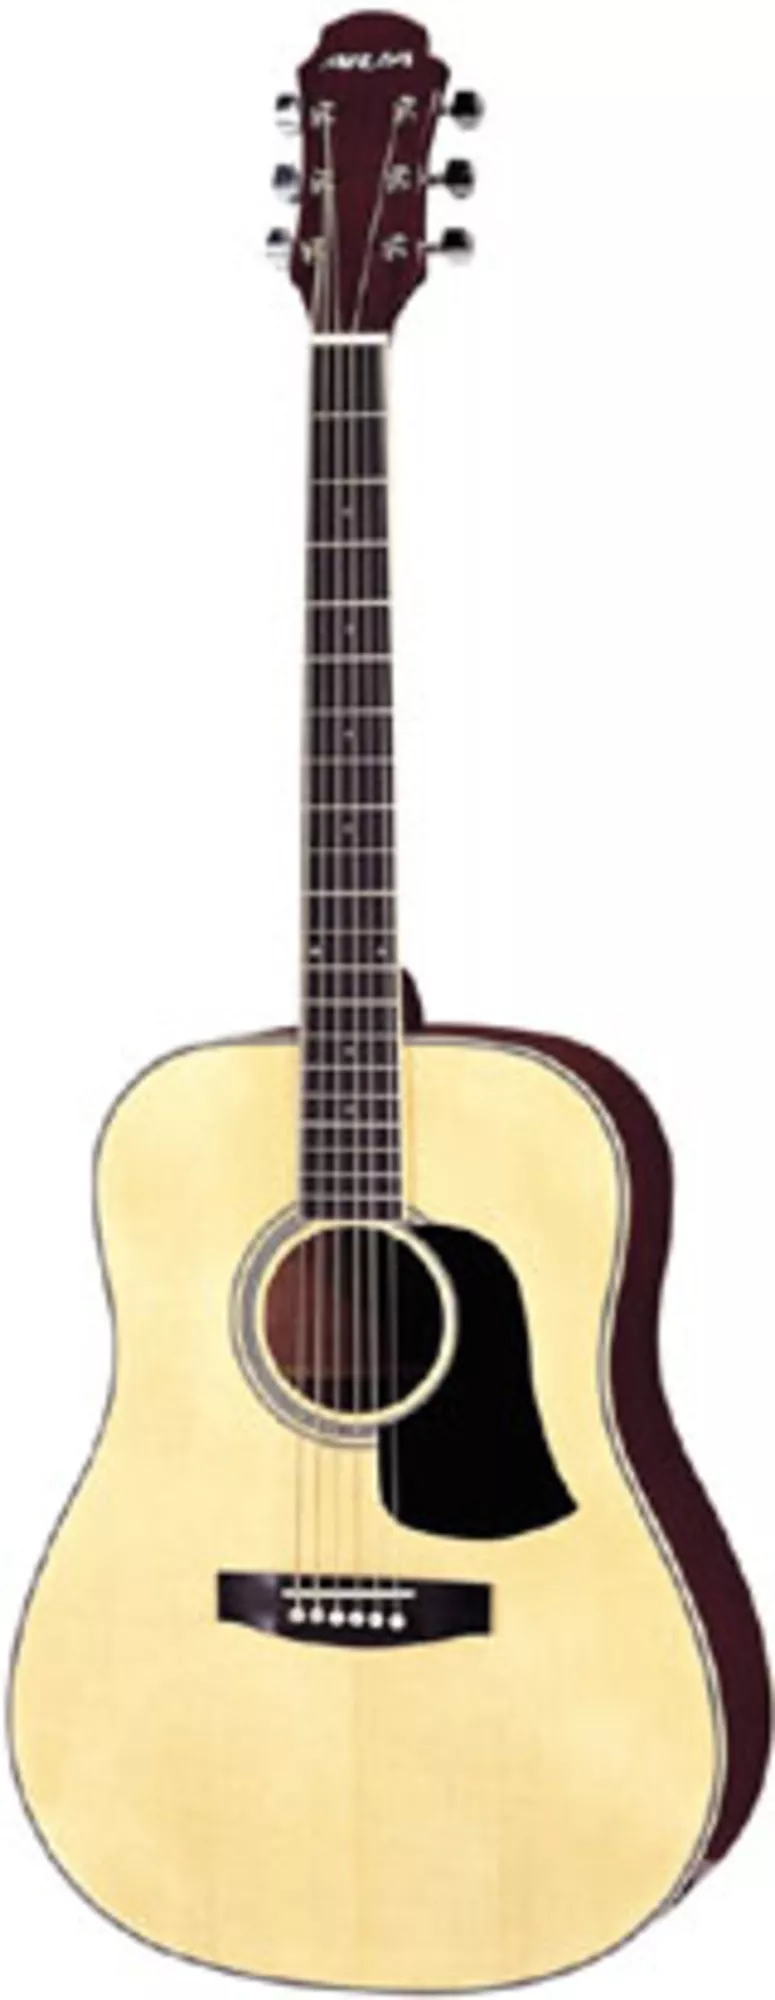 продам гитару Aria AW-35,  массив